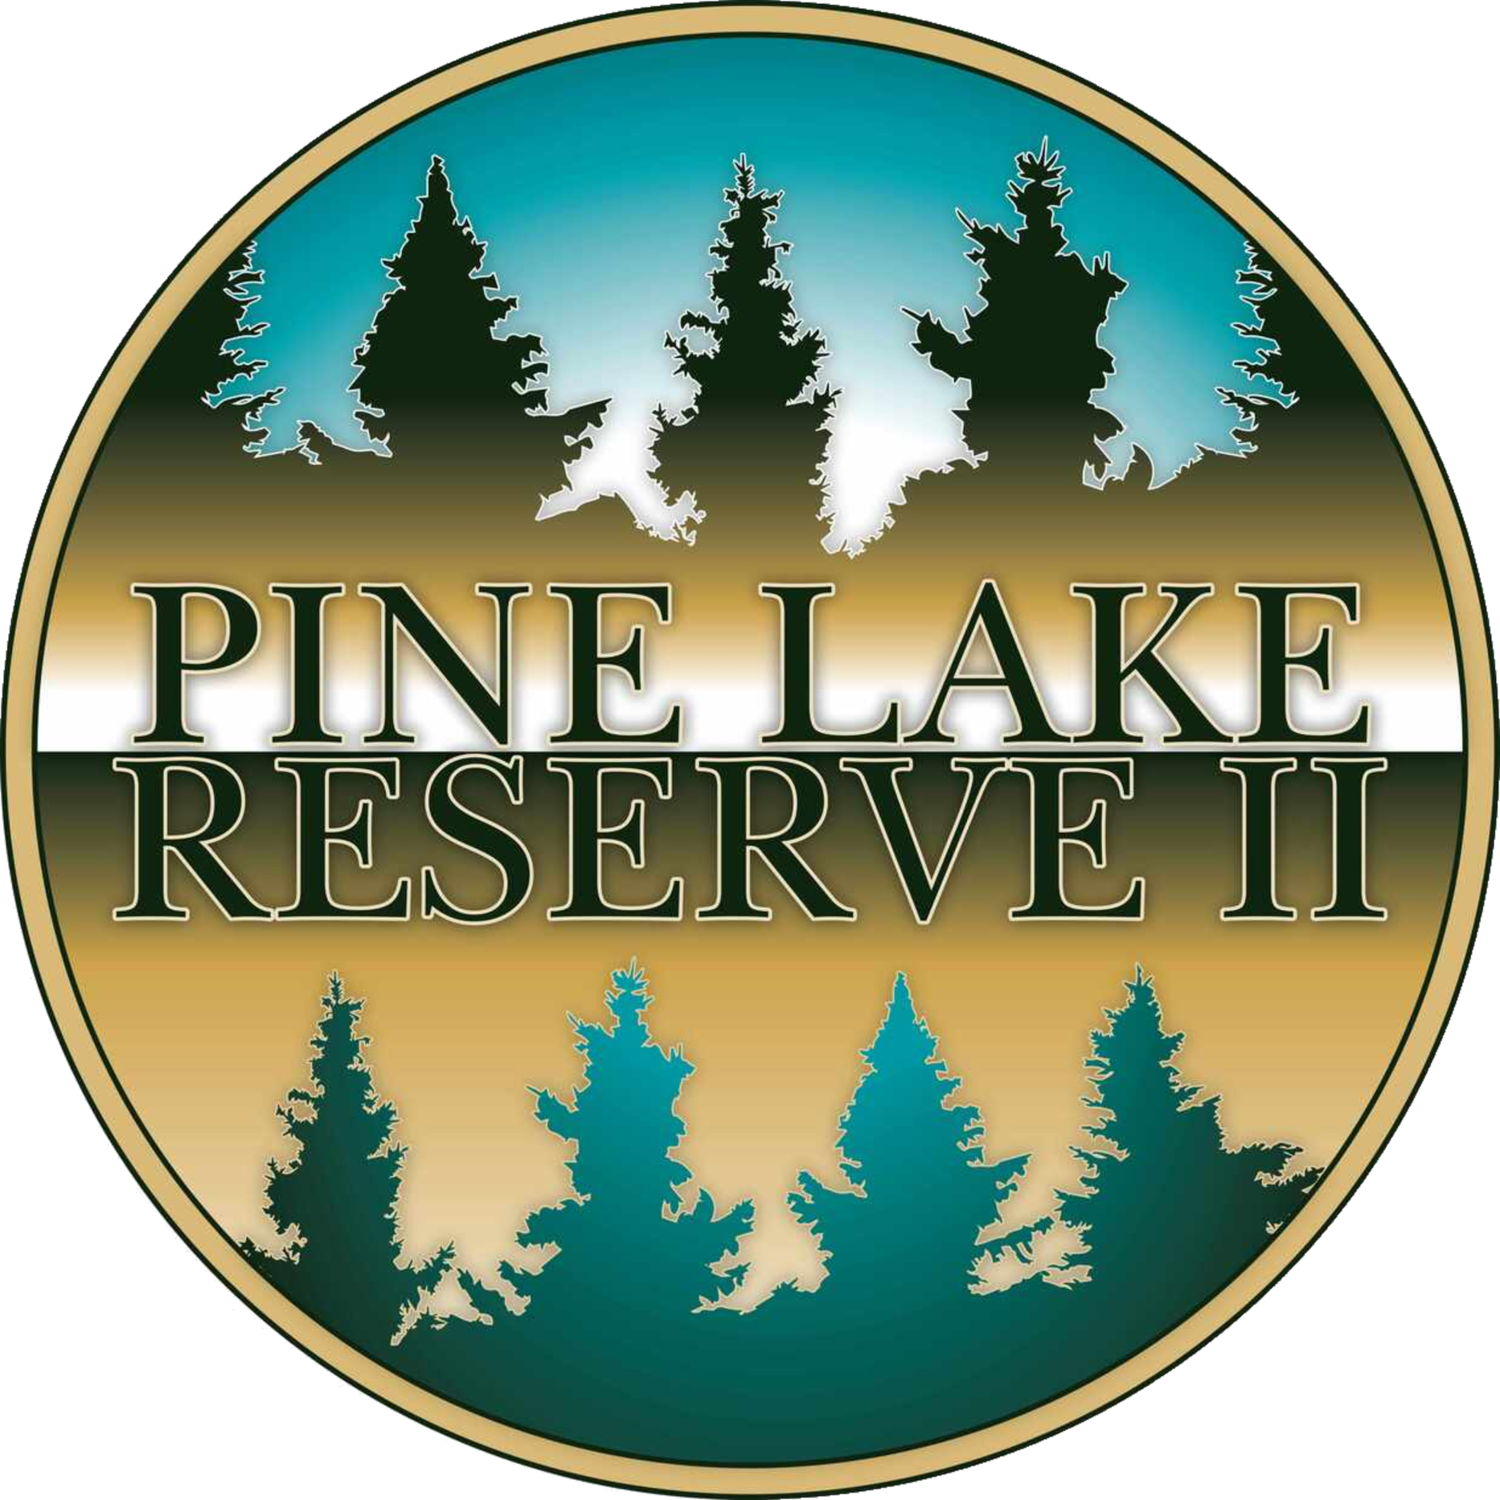 Pine Lake Reserve II